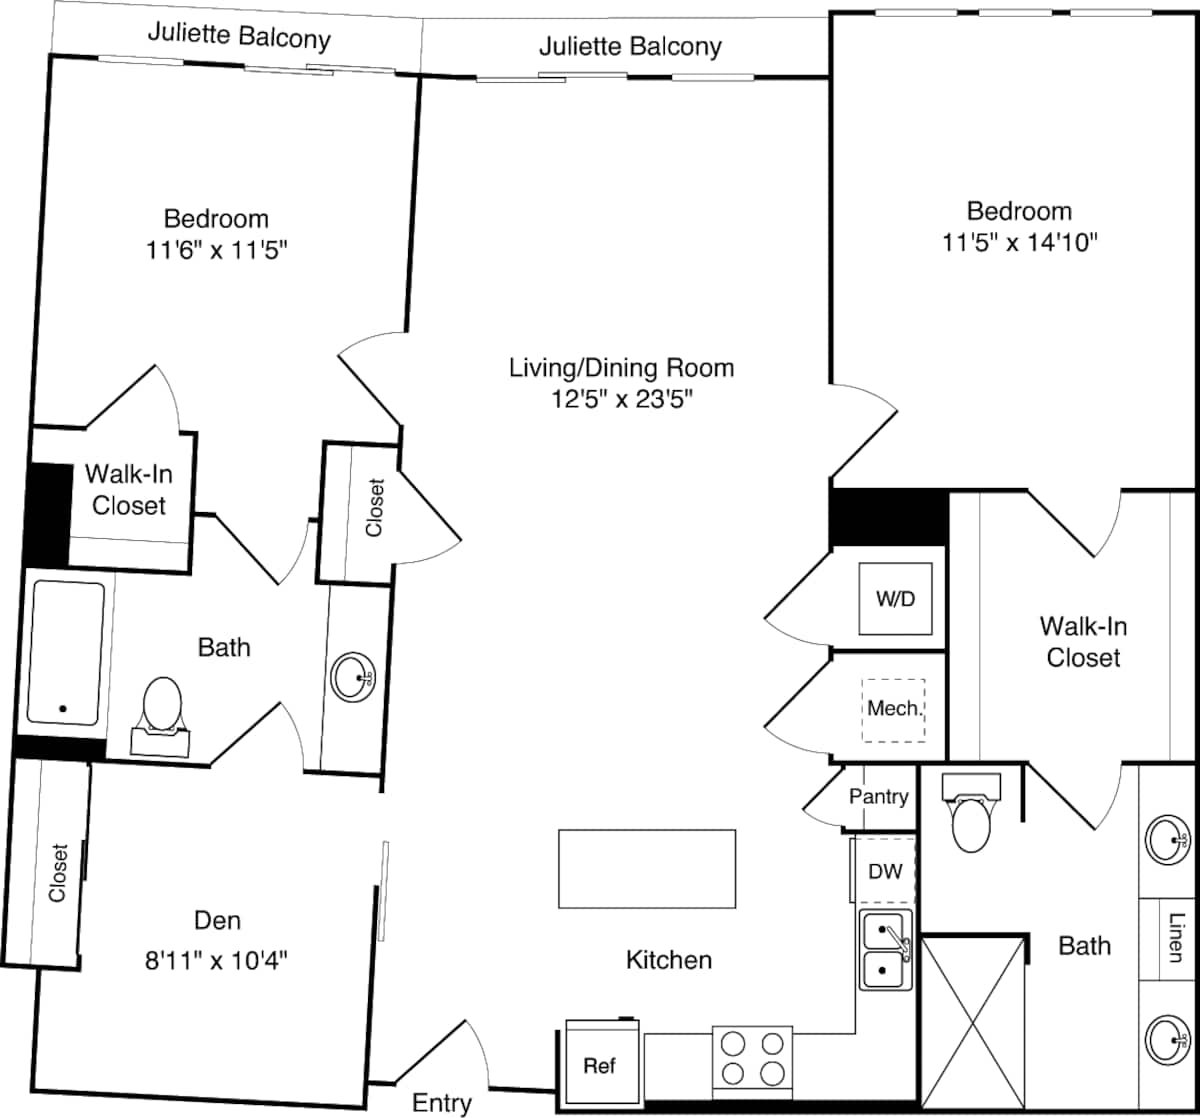 Floorplan diagram for D01-1, showing 2 bedroom